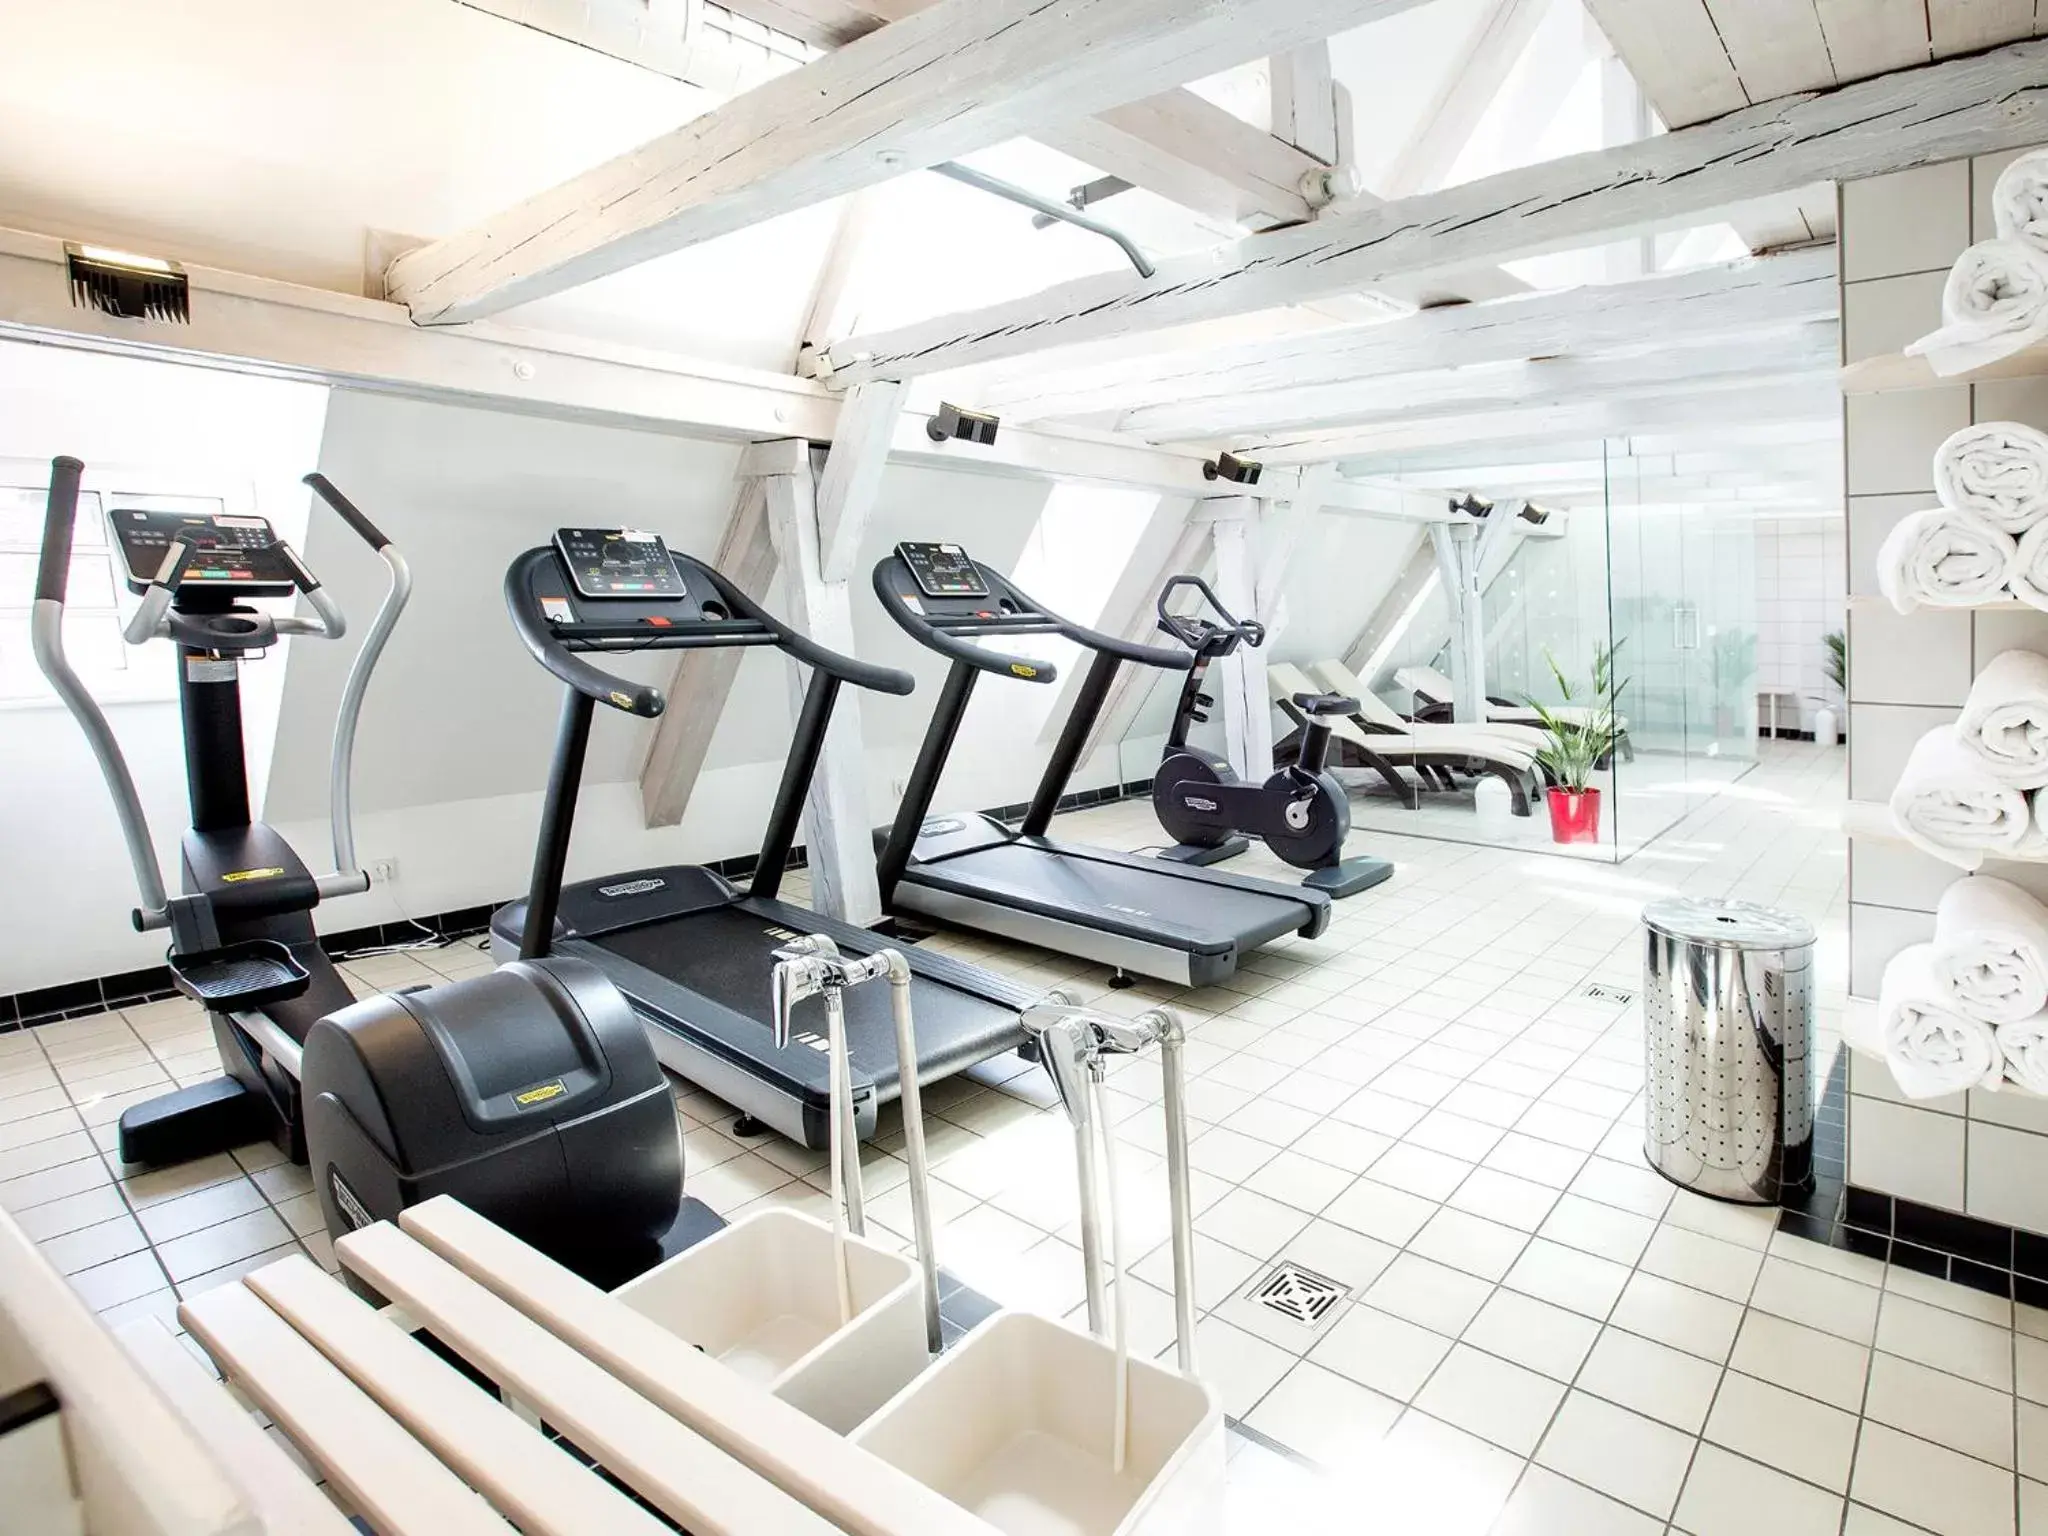 Fitness centre/facilities, Fitness Center/Facilities in DORMERO Hotel Villingen-Schwenningen